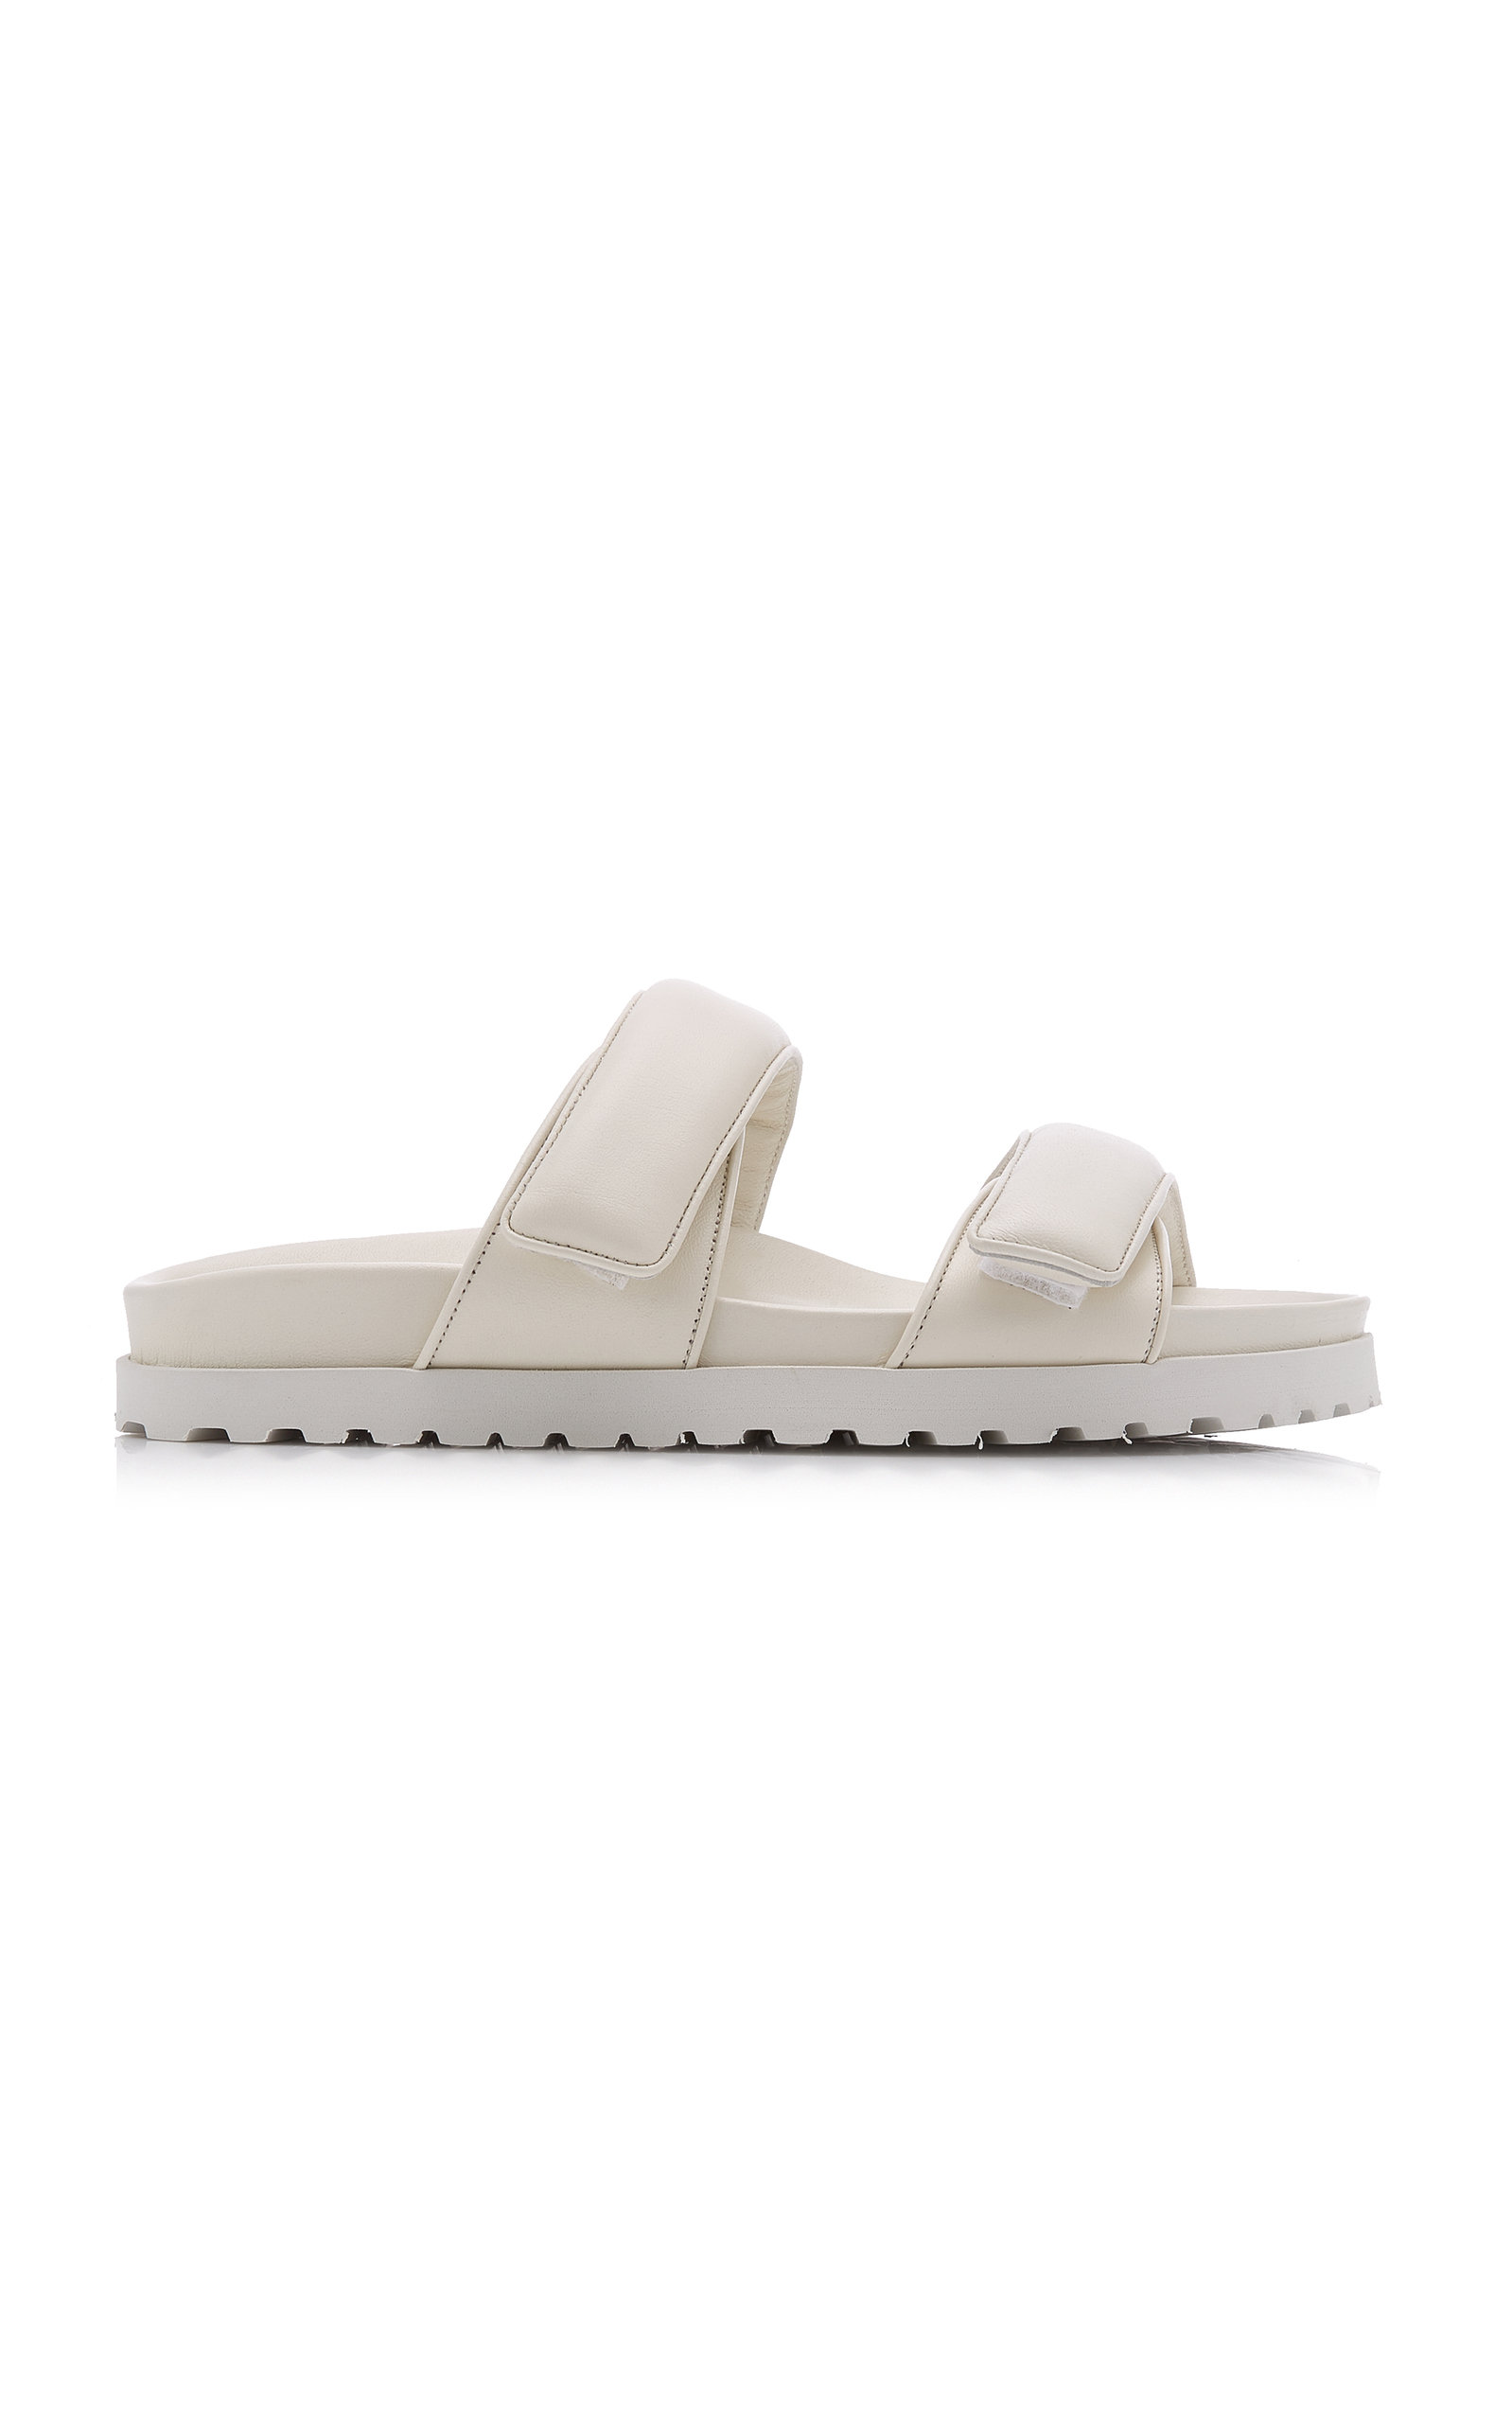 GIA x Pernille Teisbaek Women's Padded Leather Platform Slide Sandals